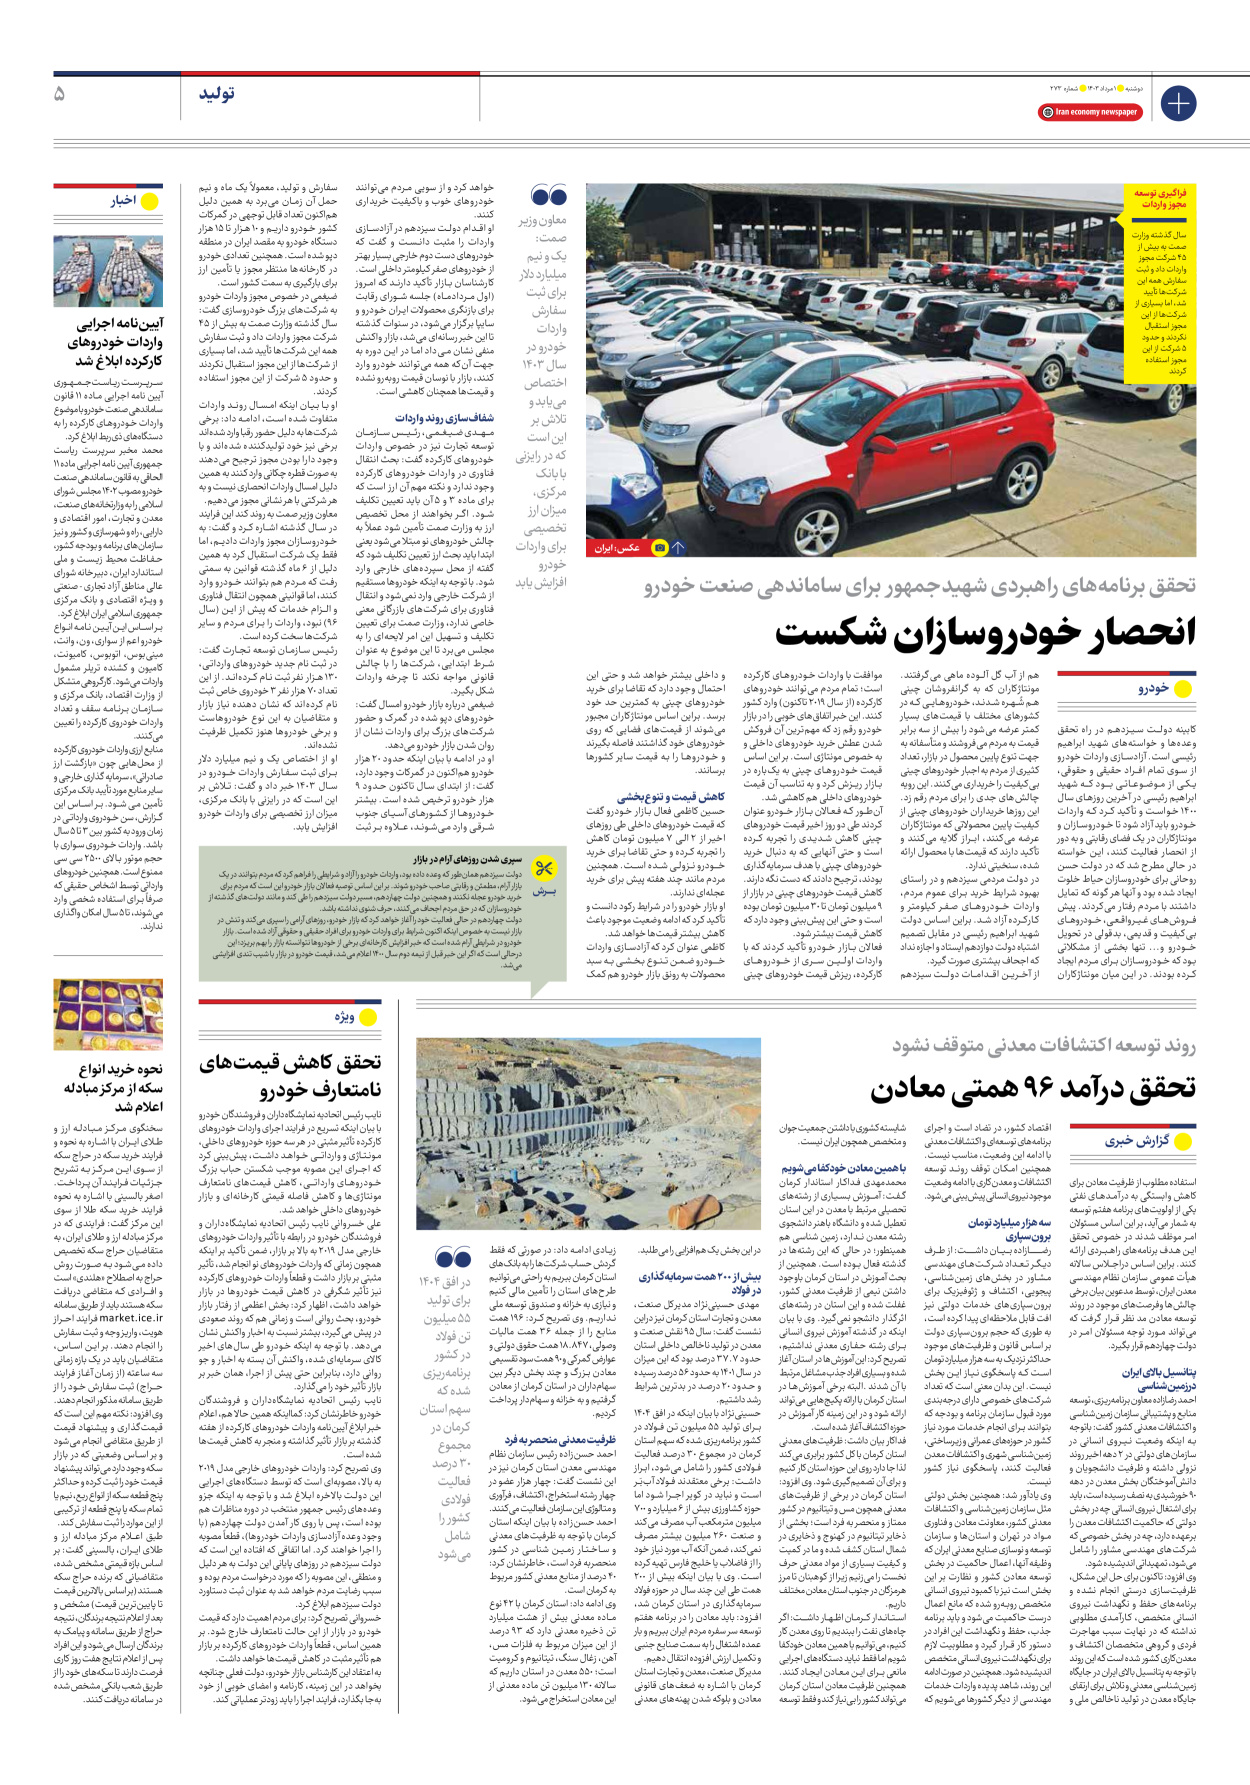 روزنامه ایران اقتصادی - شماره دویست و هفتاد و سه - ۰۱ مرداد ۱۴۰۳ - صفحه ۵